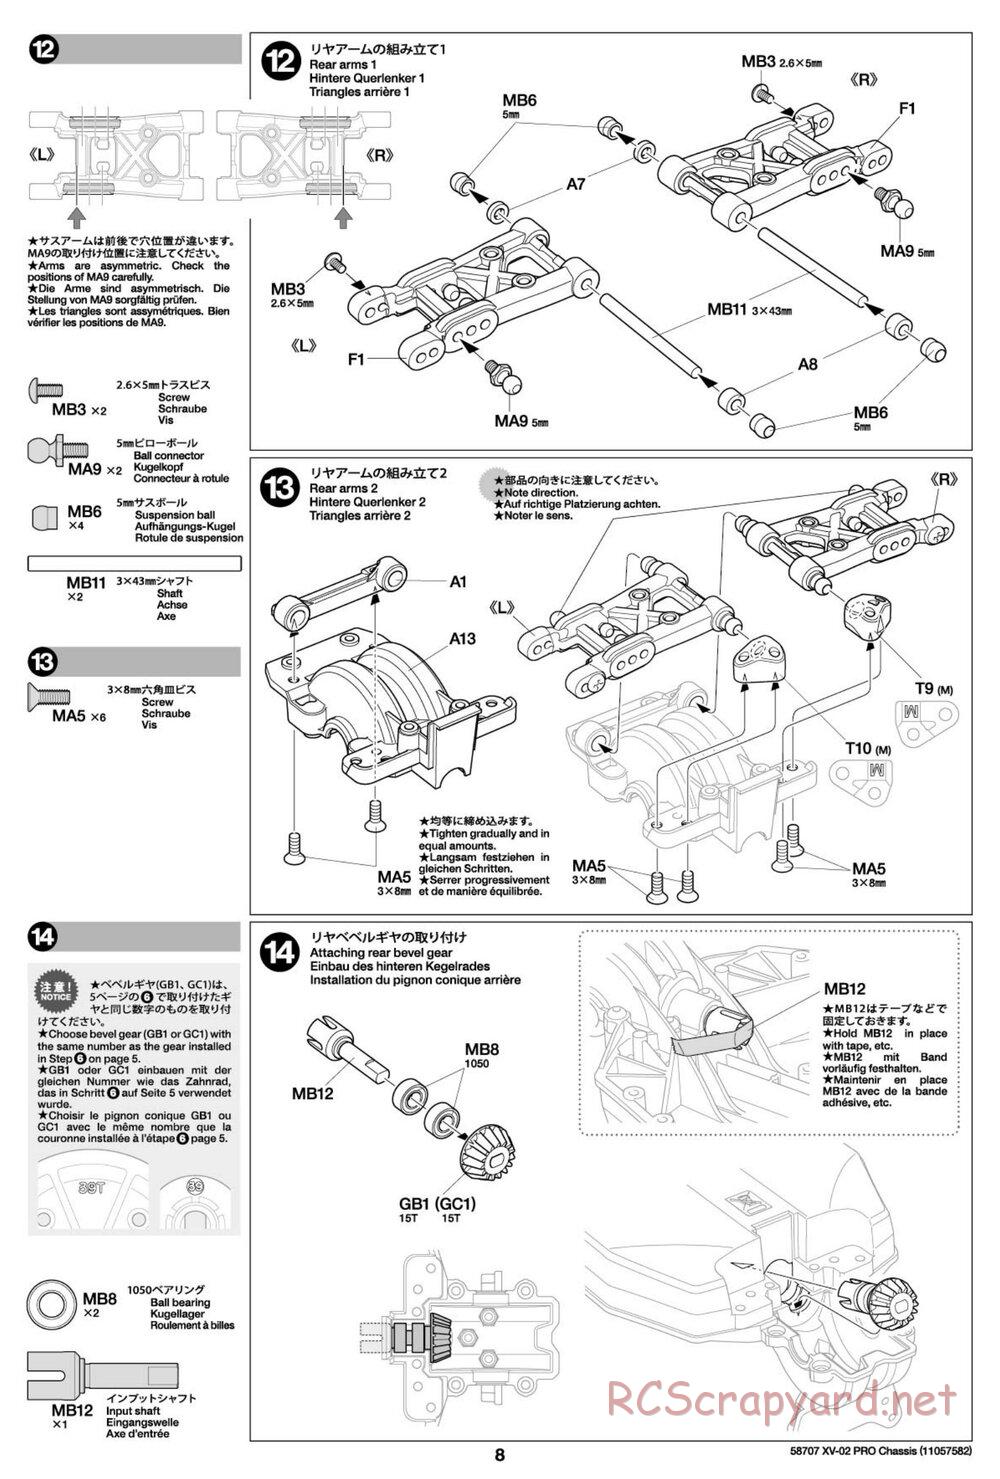 Tamiya - XV-02 Pro Chassis - Manual - Page 8